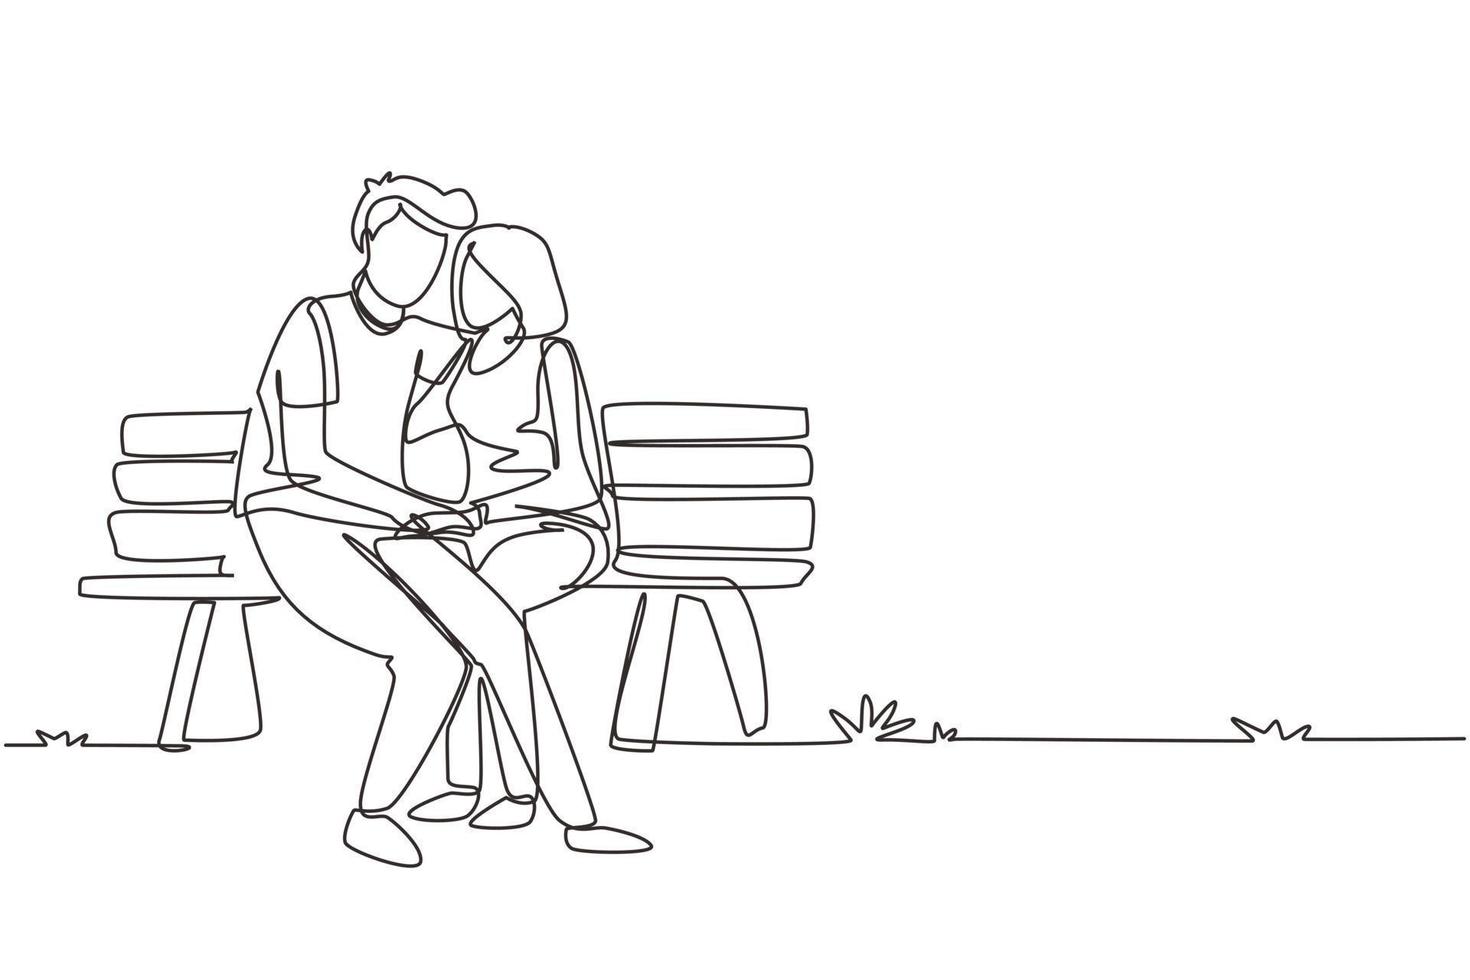 coppia romantica di disegno a linea continua singola. donna uomo seduto su una panchina nel parco cittadino. concetto di famiglia felice. l'intimità celebra l'anniversario di matrimonio. illustrazione vettoriale di un disegno grafico a una linea